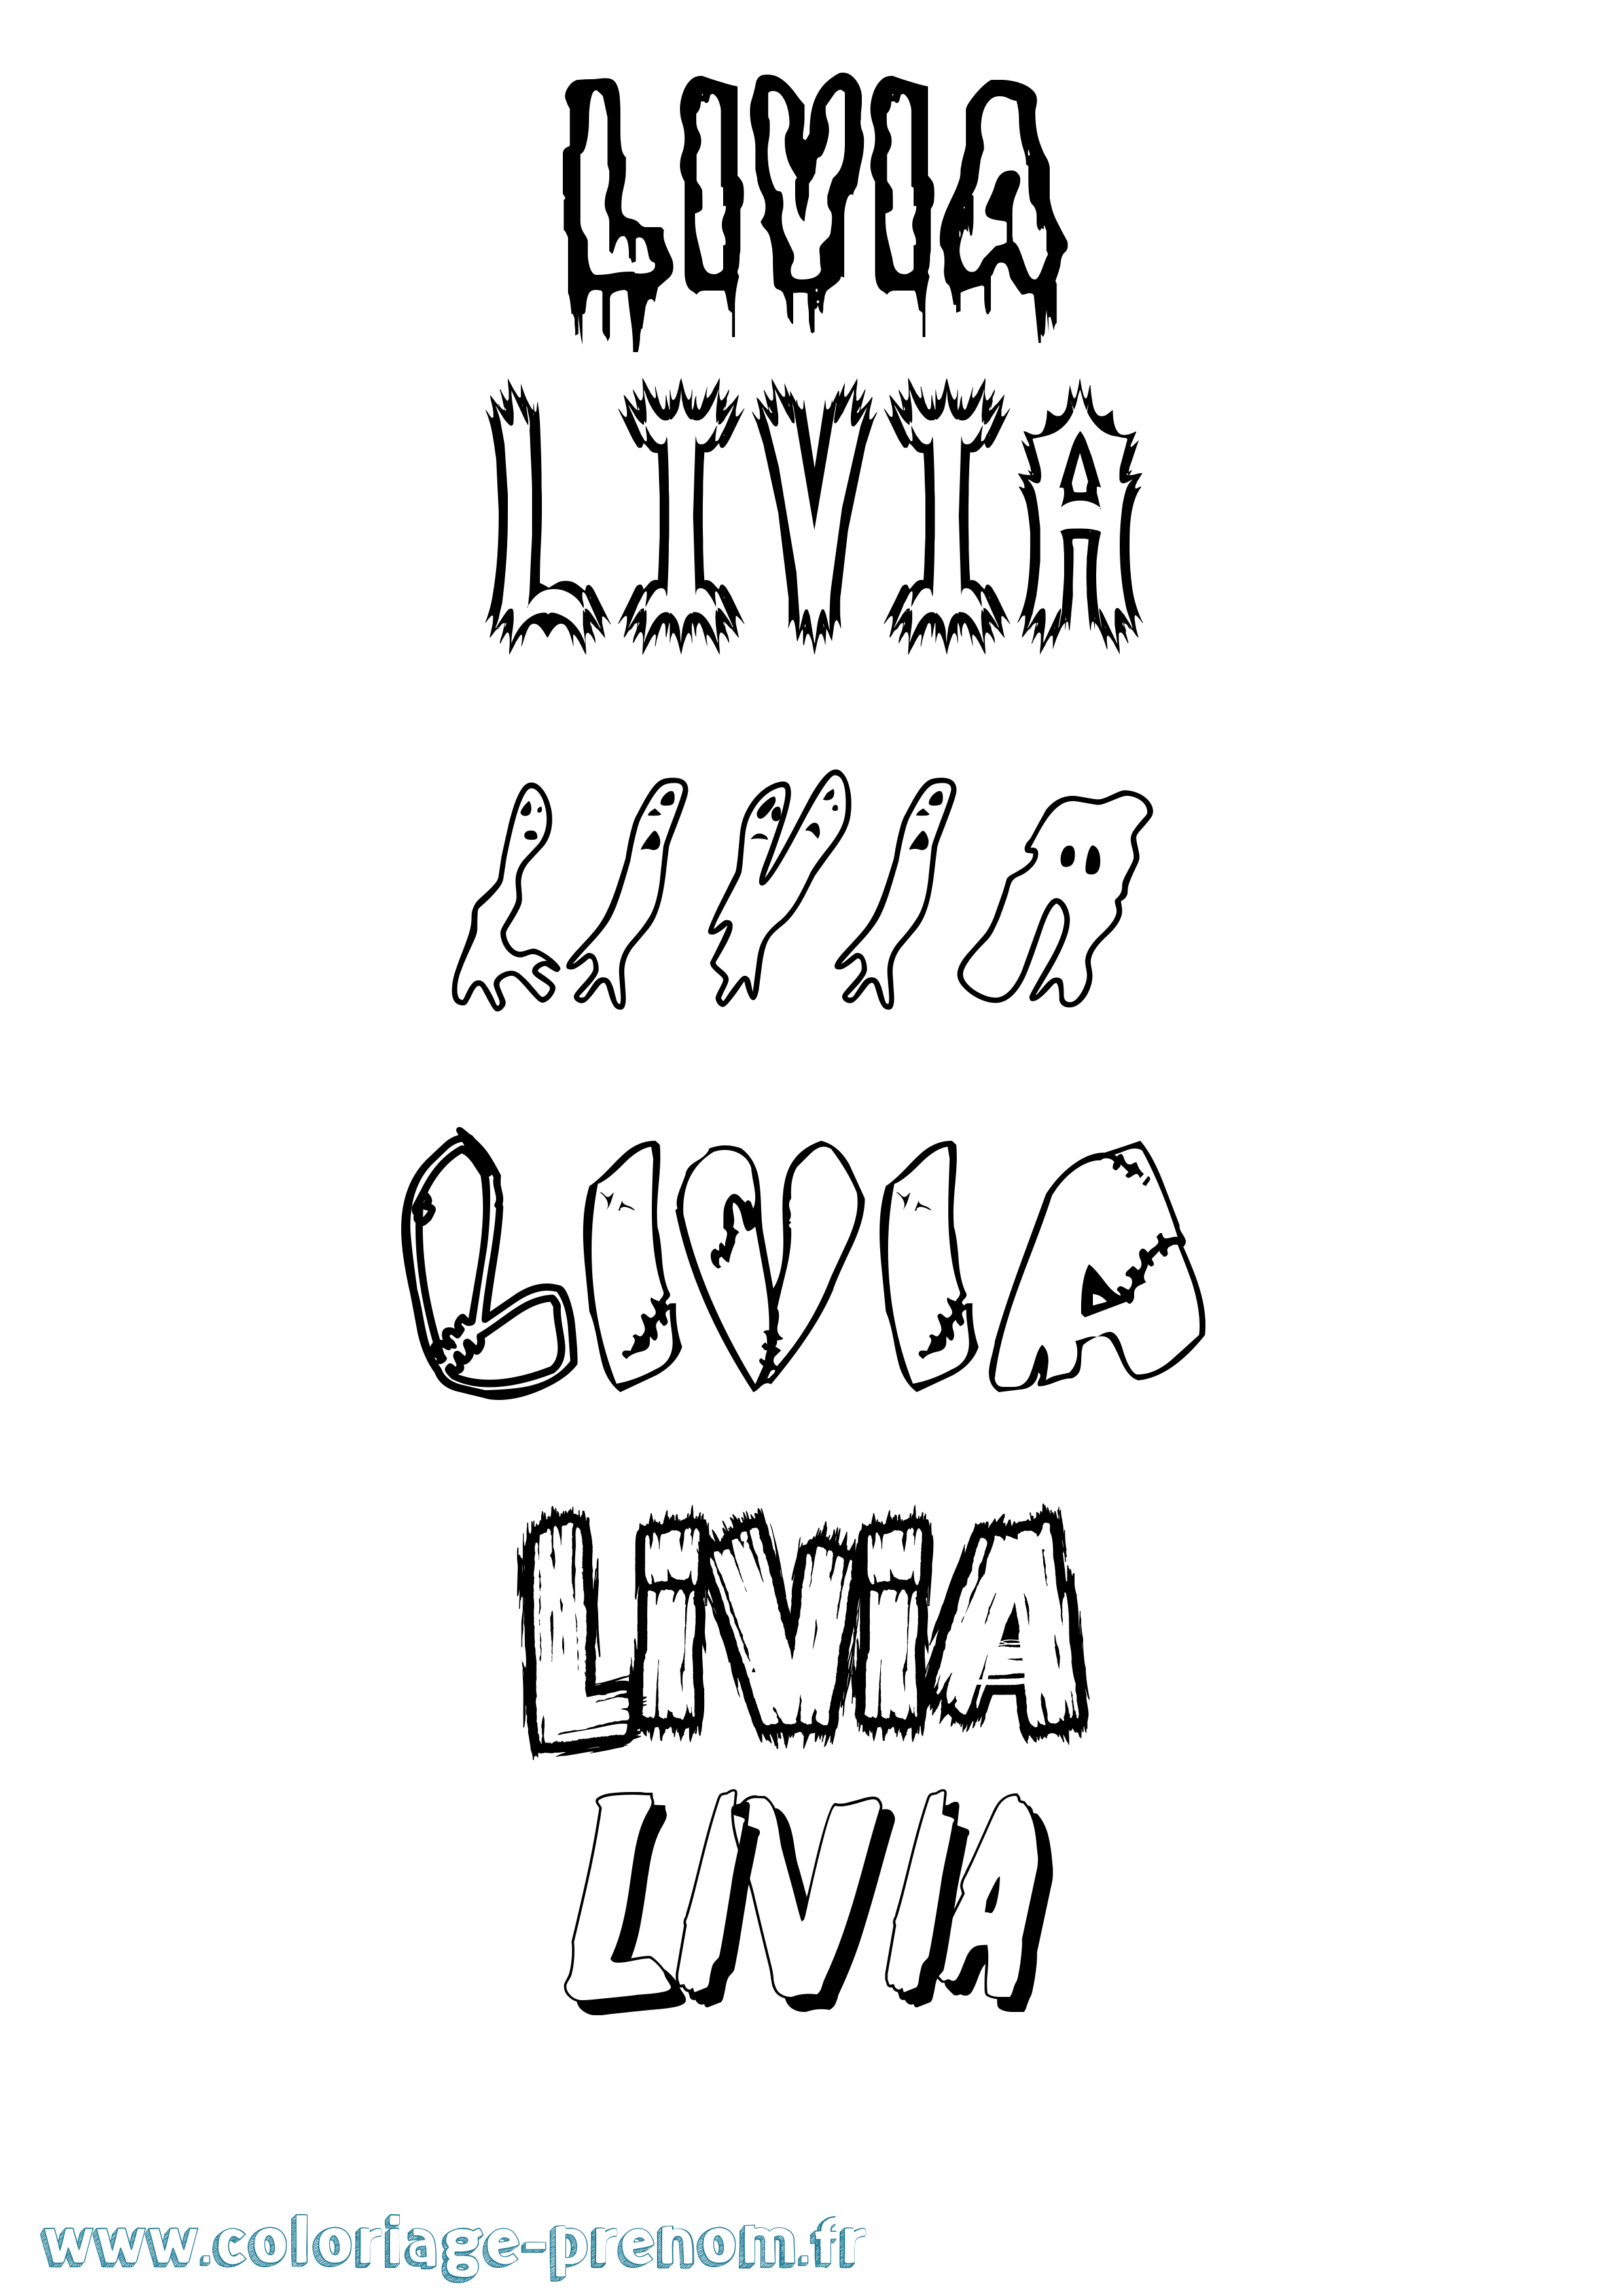 Coloriage prénom Livia Frisson